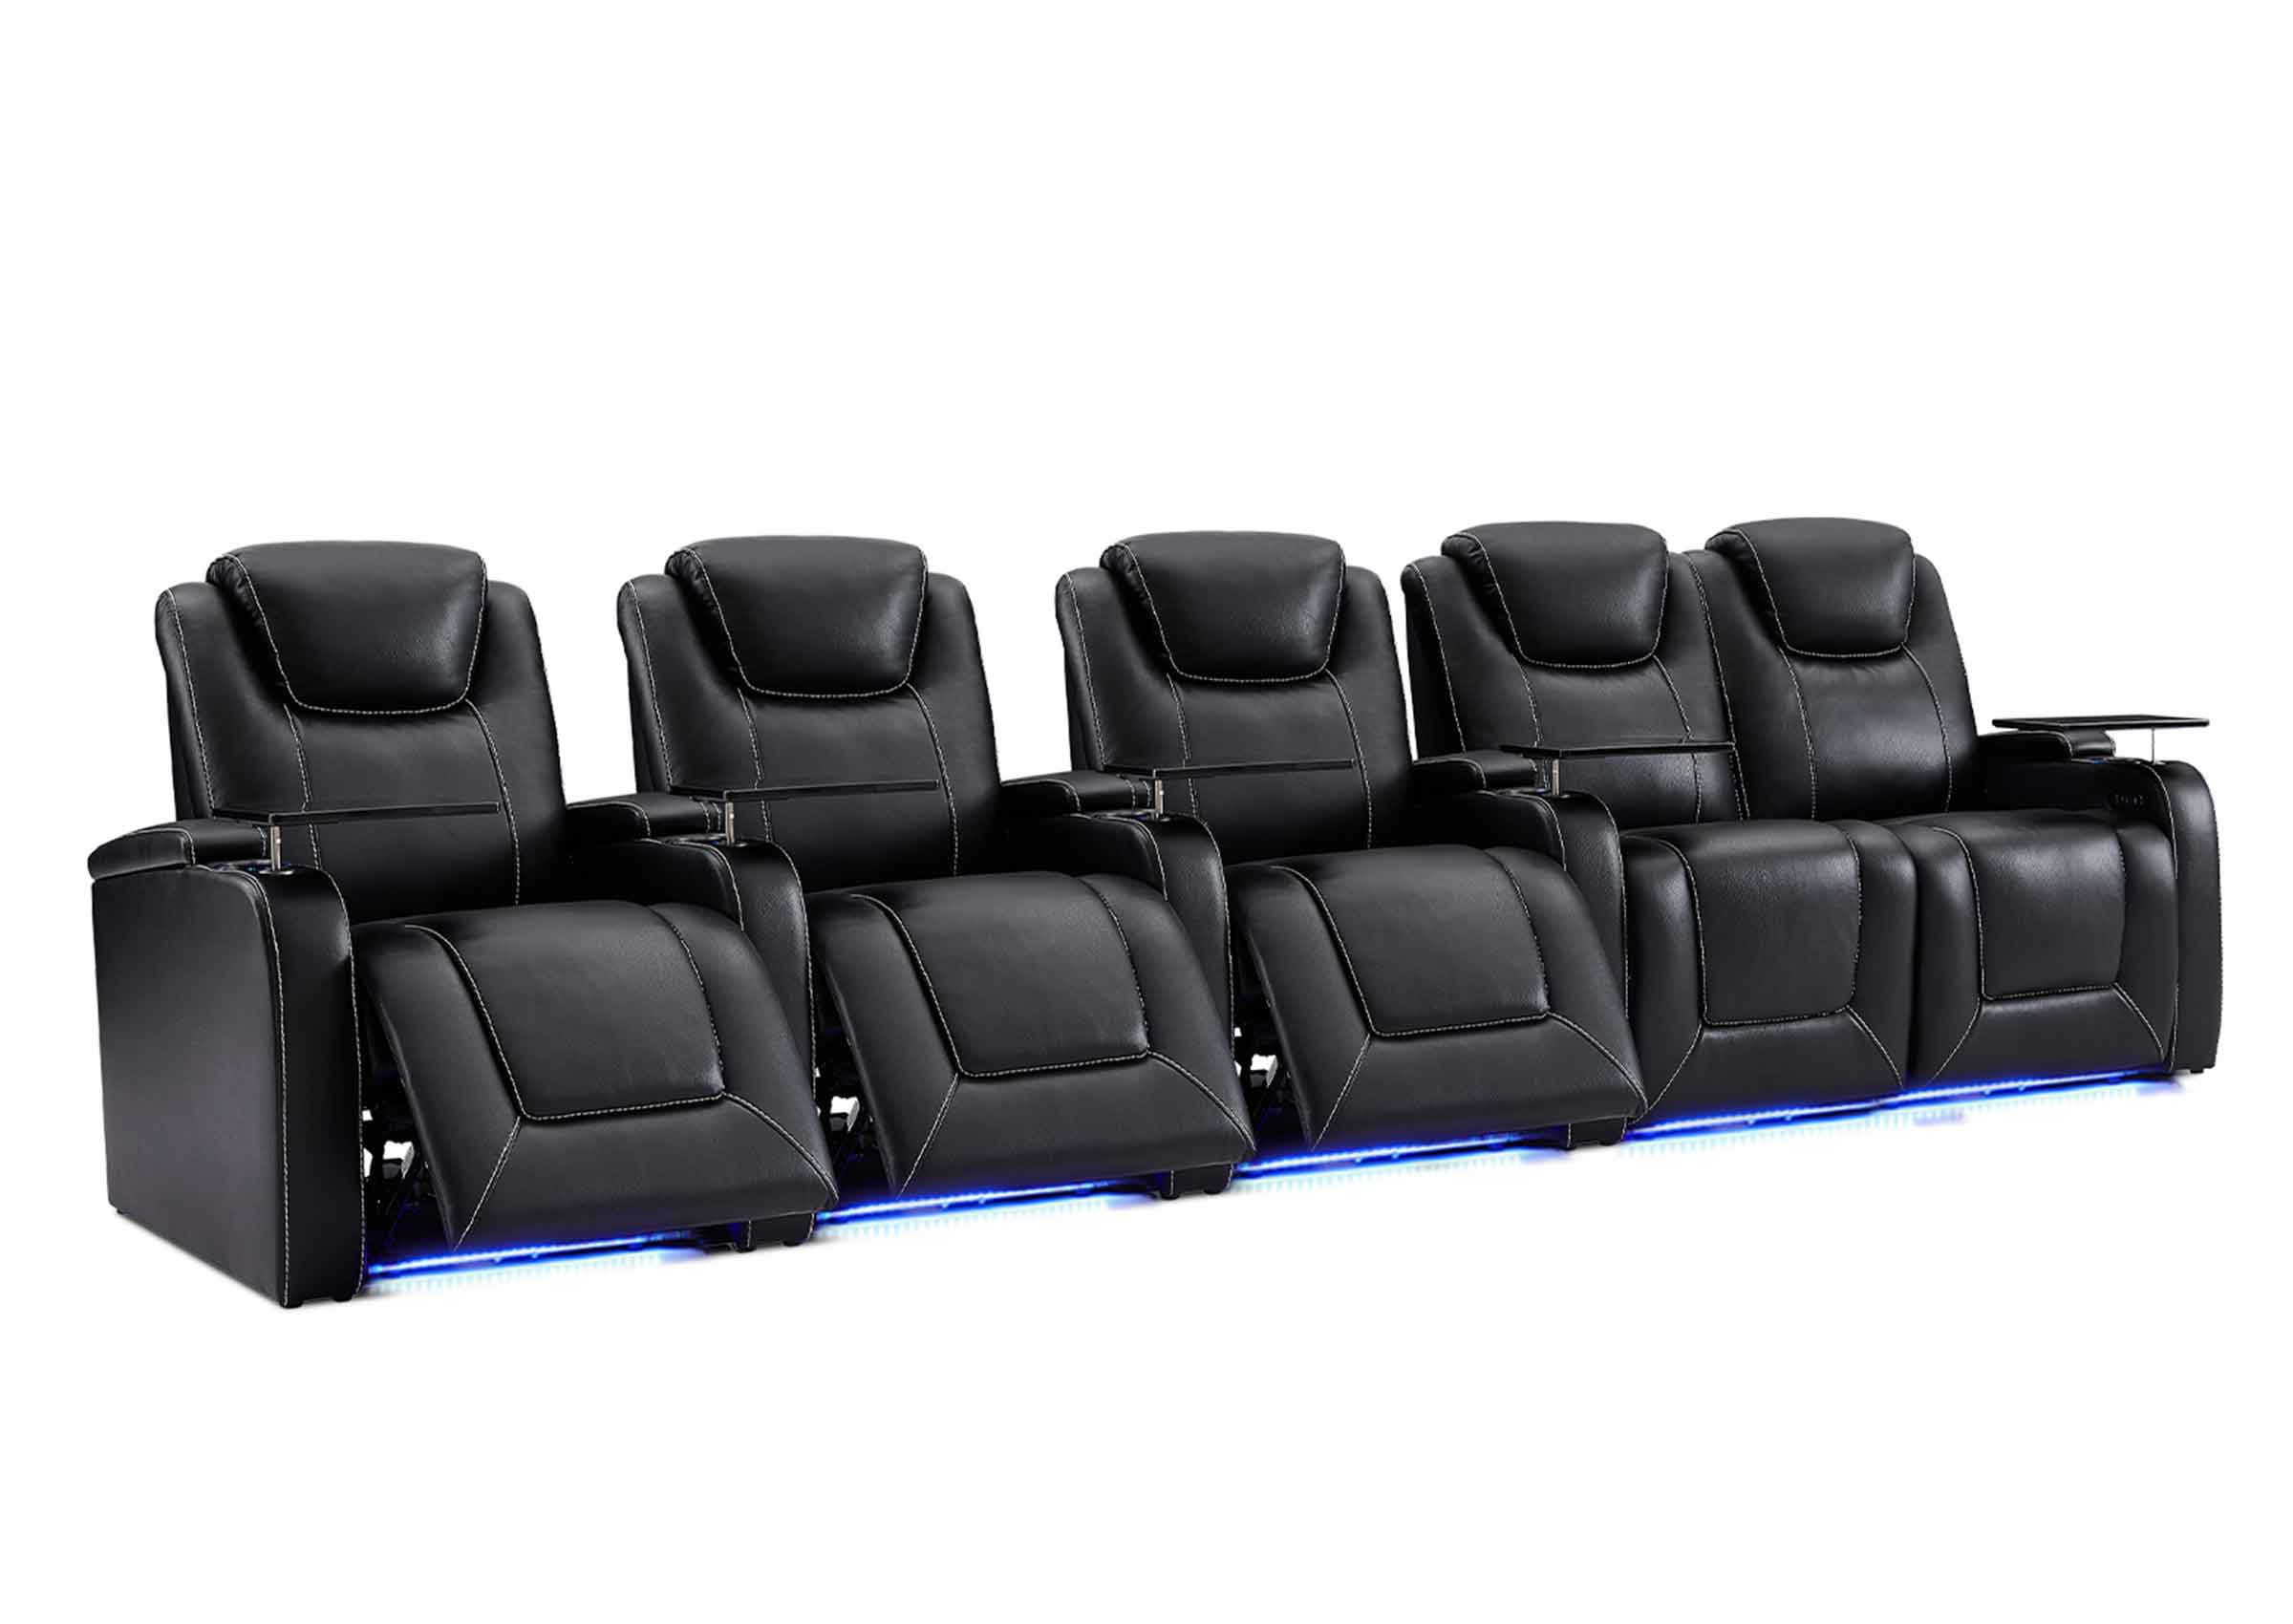 Weilianda Aviator Series Home Theater Seating